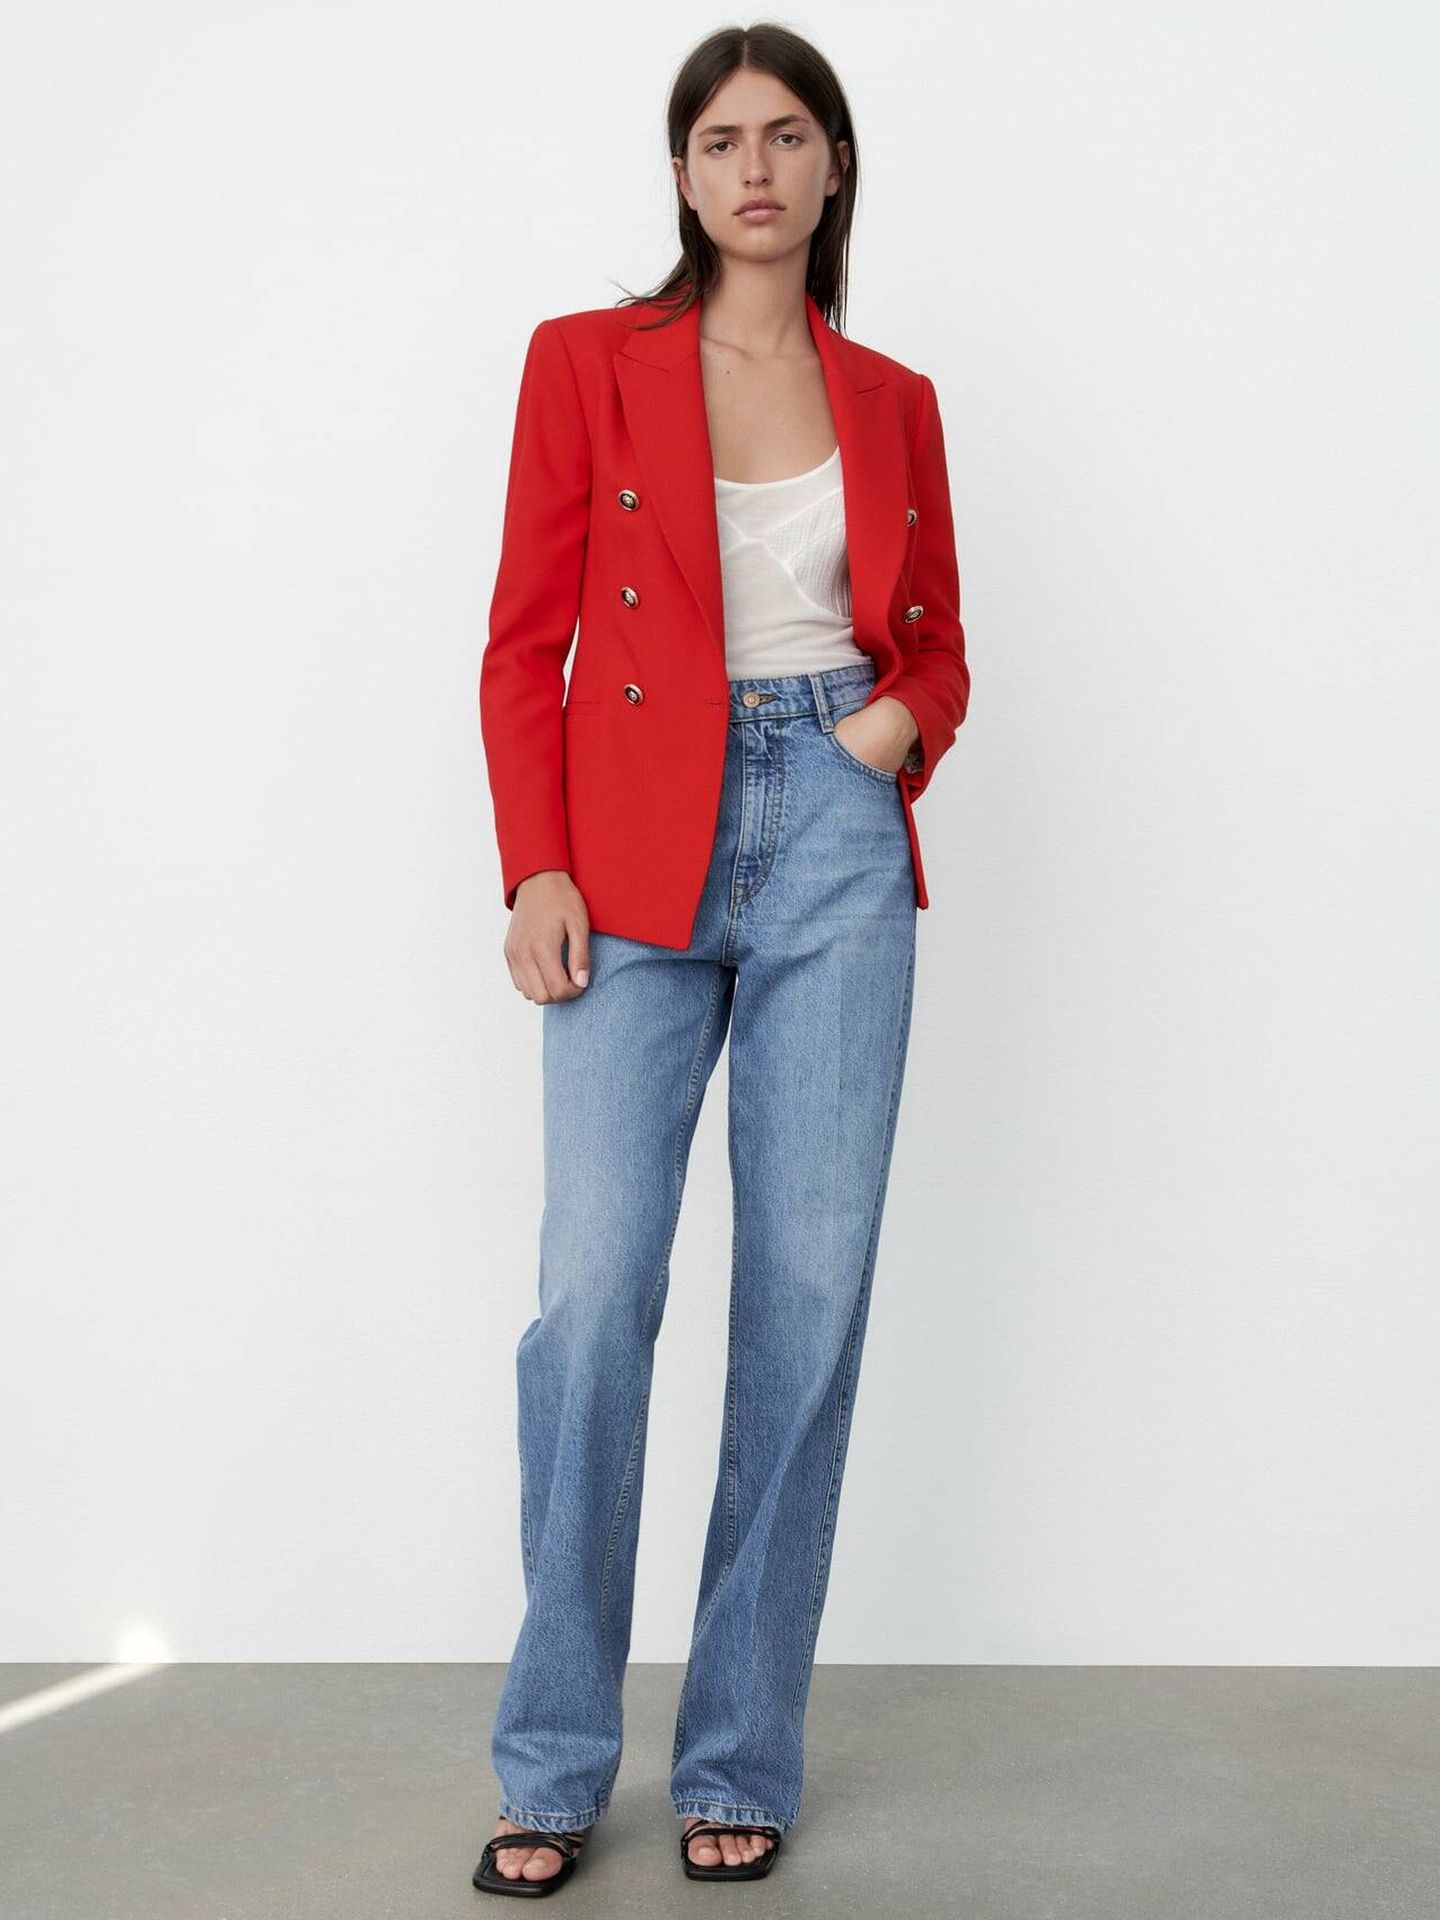 Zara combina su blazer rojo con estos vaqueros ideales. (Cortesía)